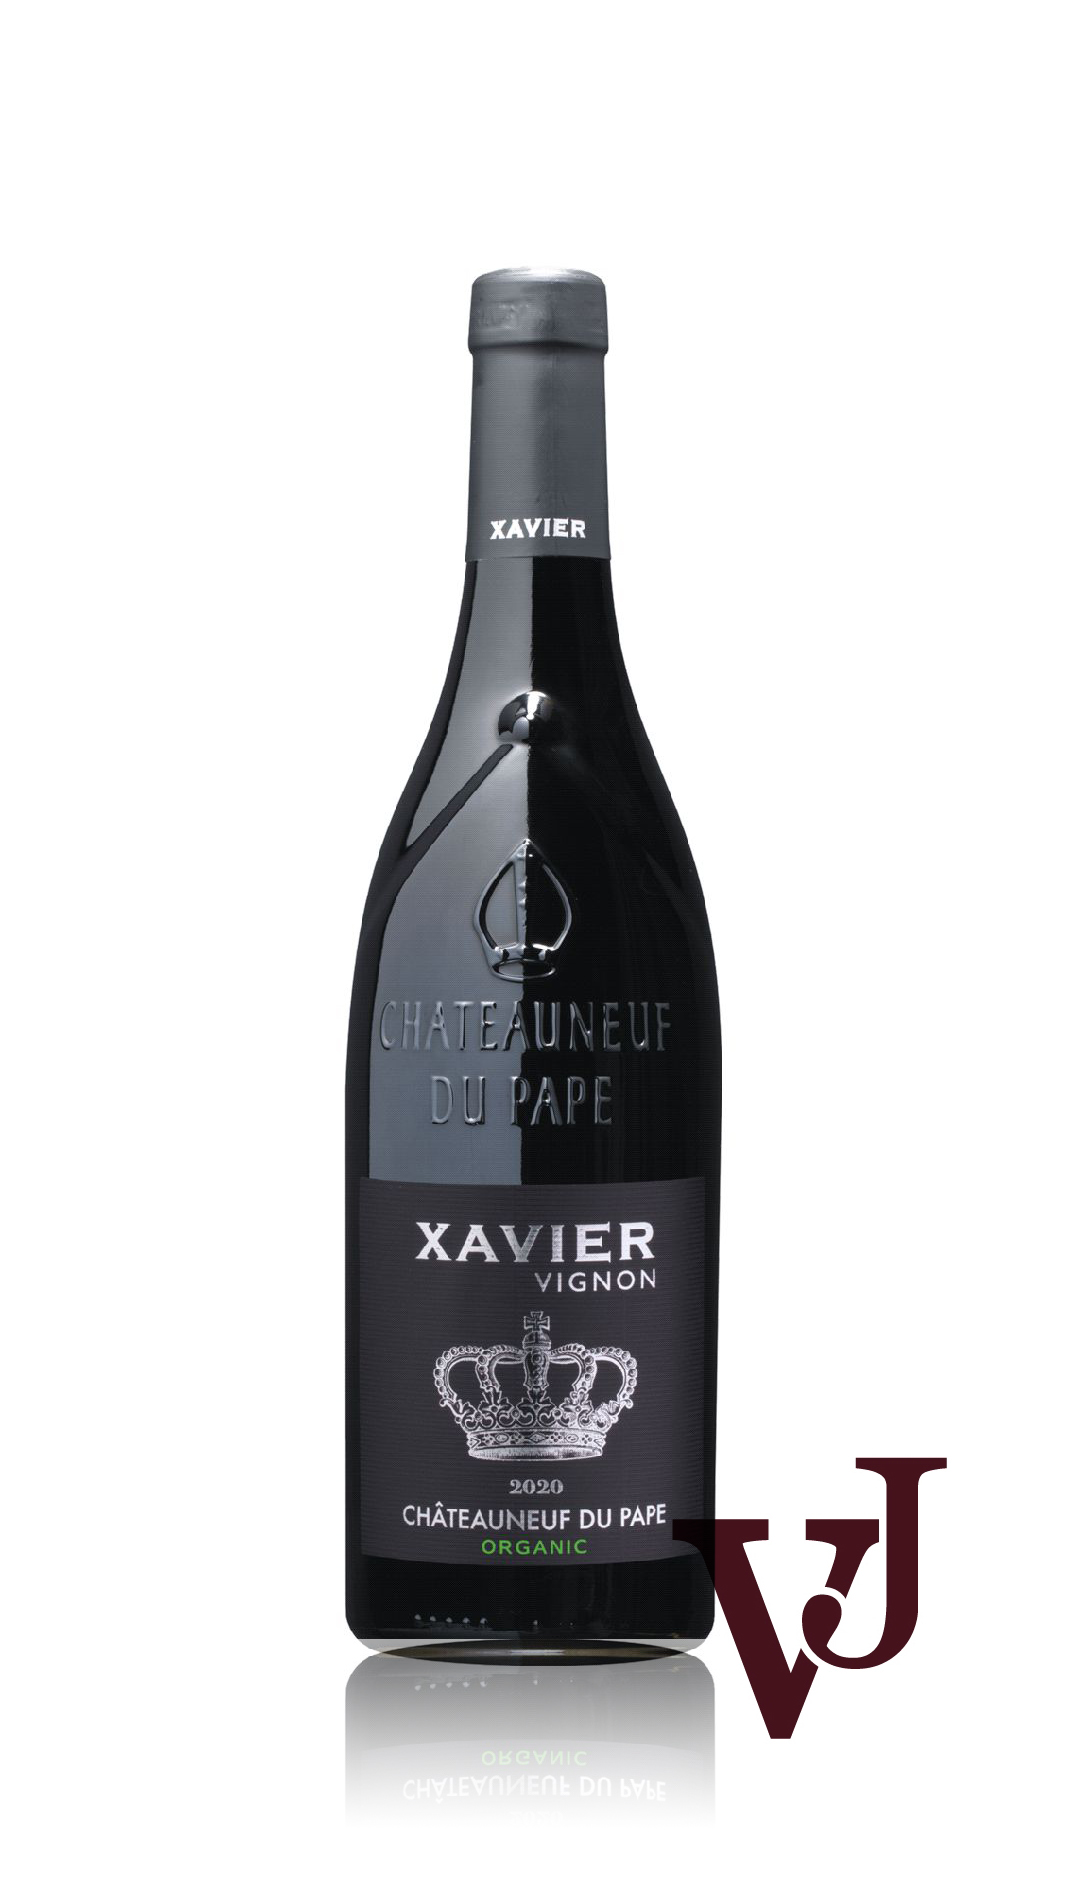 Rött Vin - Xavier Vignon Châteauneuf-du-Pape artikel nummer 626701 från producenten Xavier Vignon från området Frankrike - Vinjournalen.se